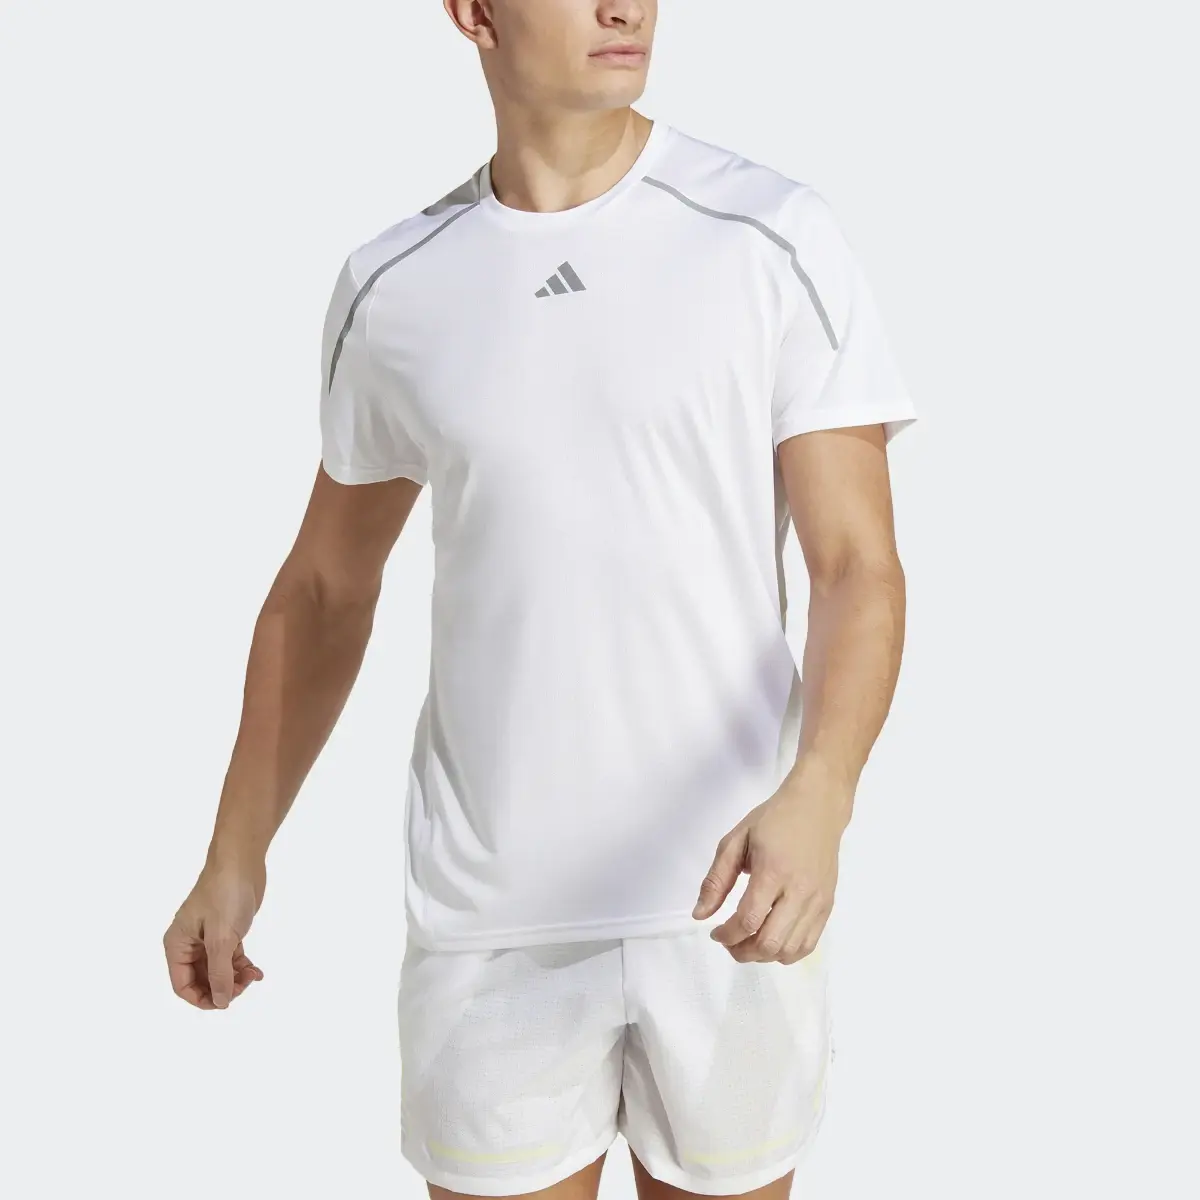 Adidas T-shirt Confident Engineered. 1